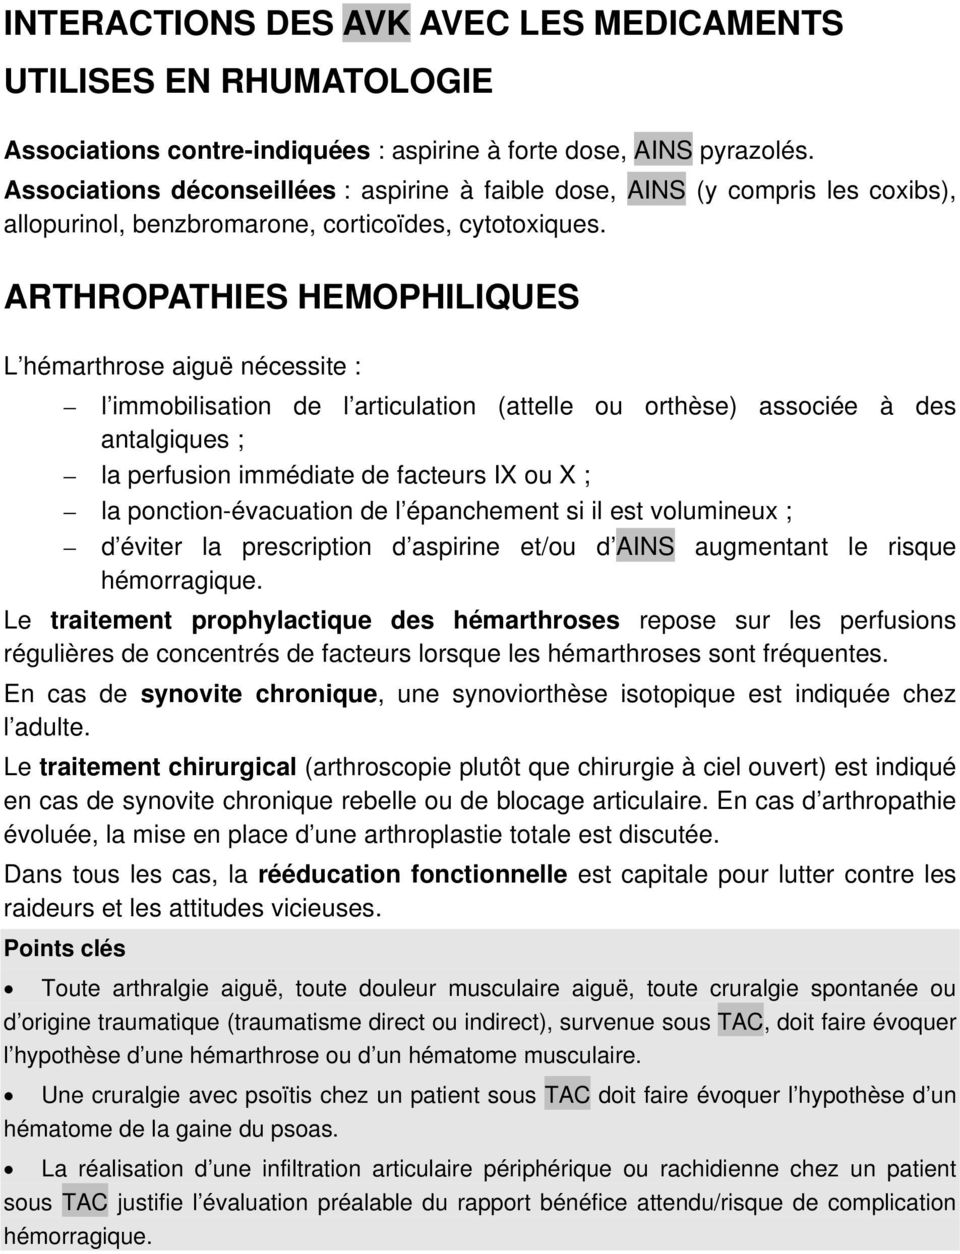 ARTHROPATHIES HEMOPHILIQUES L hémarthrose aiguë nécessite : l immobilisation de l articulation (attelle ou orthèse) associée à des antalgiques ; la perfusion immédiate de facteurs IX ou X ; la